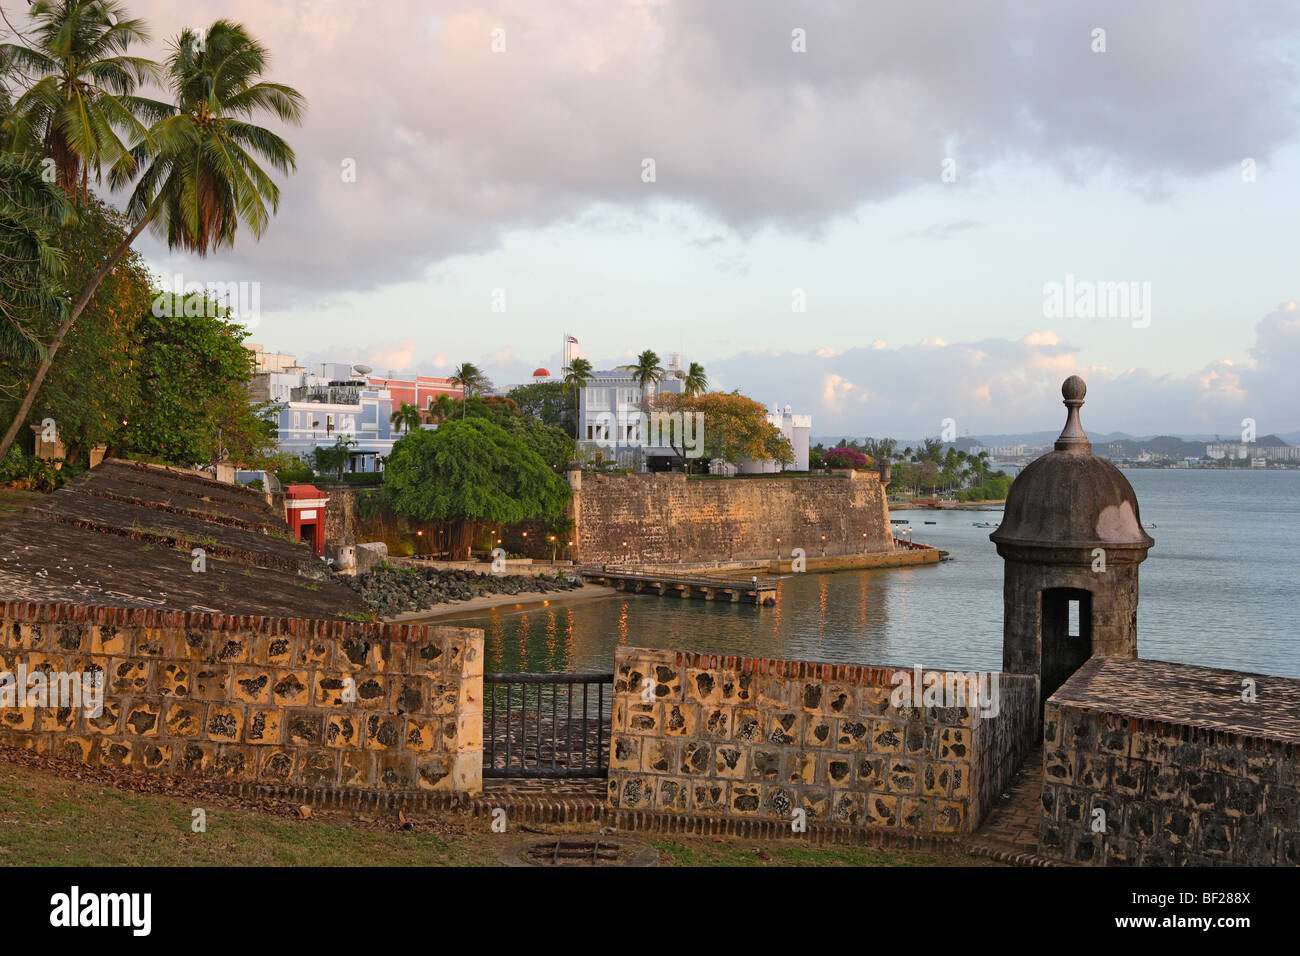 El casco histórico de la ciudad bajo el cielo nublado, Puerta de San Juan, San Juan, Puerto Rico, el Caribe, América Foto de stock